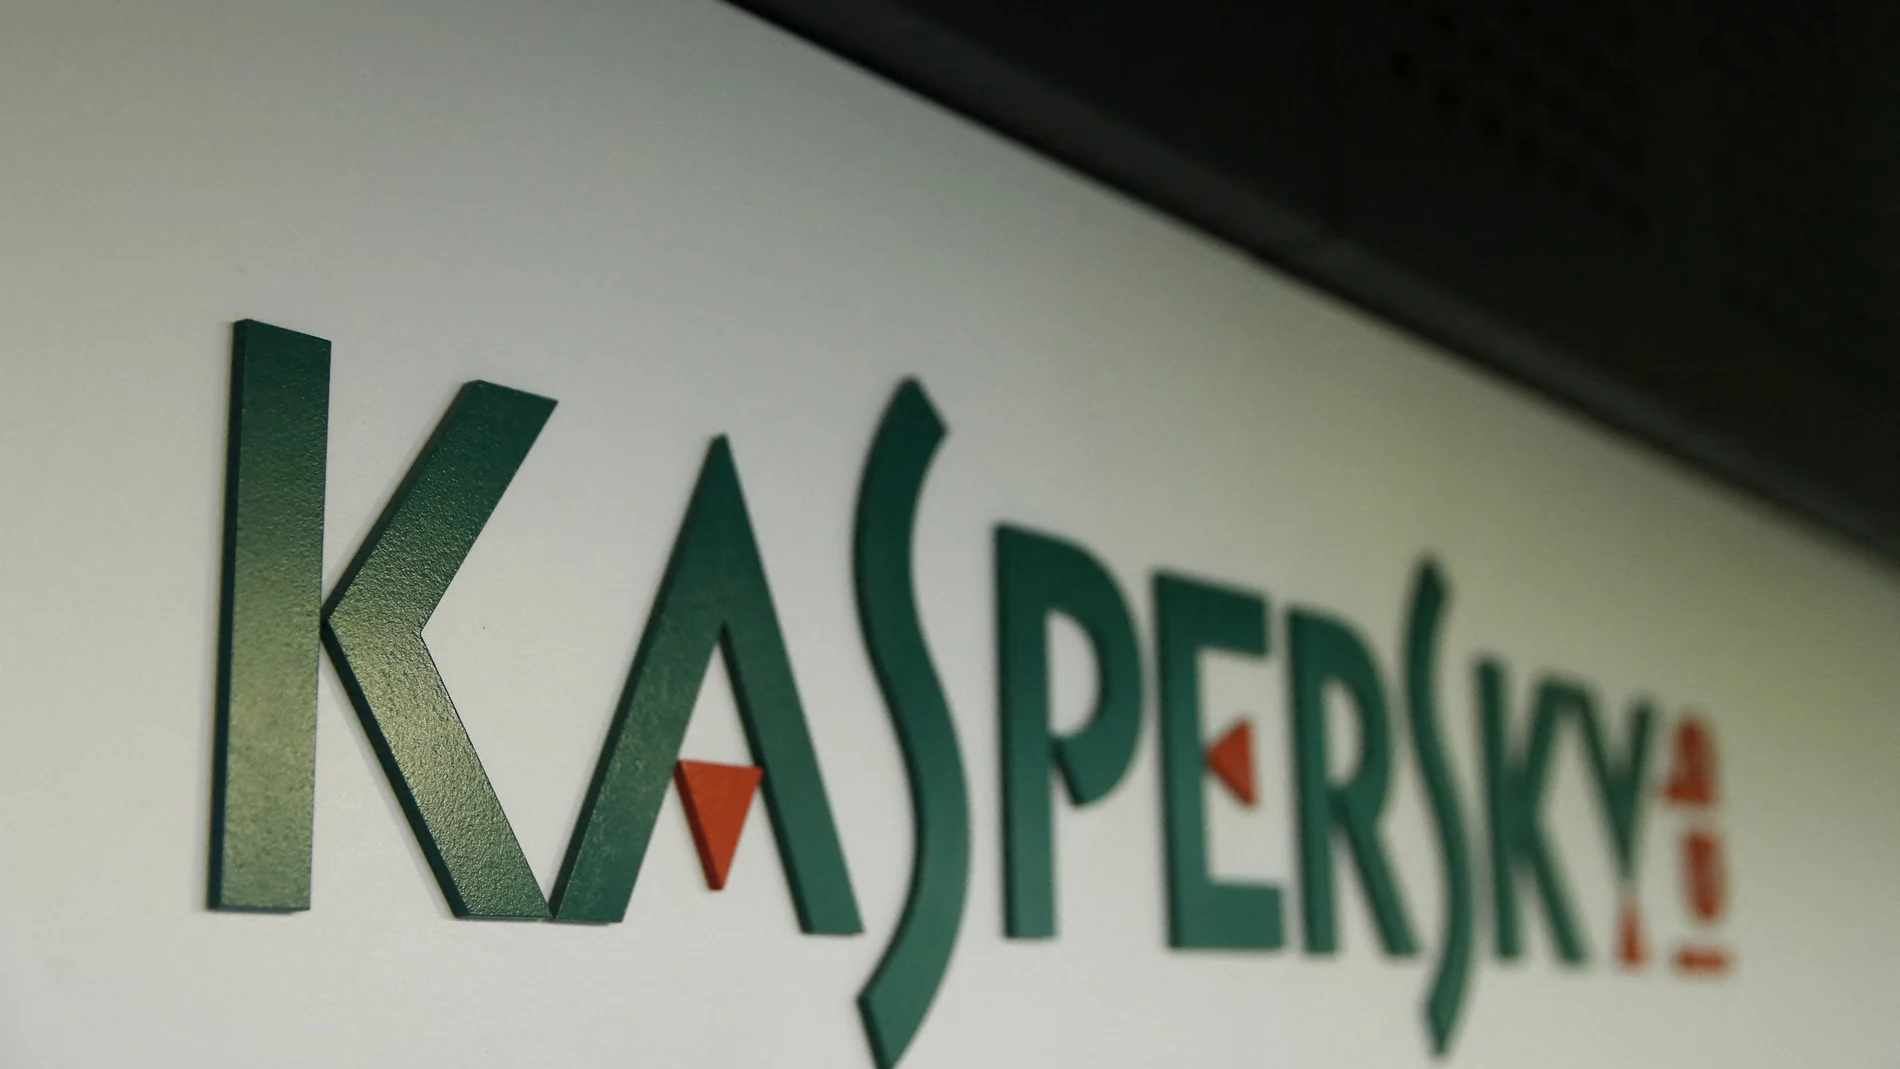 FILE PHOTO: El logo de Kaspersky Lab en la oficina de la compañía en Moscú, Rusia, el 27 de octubre de 2017. REUTERS/Maxim Shemetov/File Photo